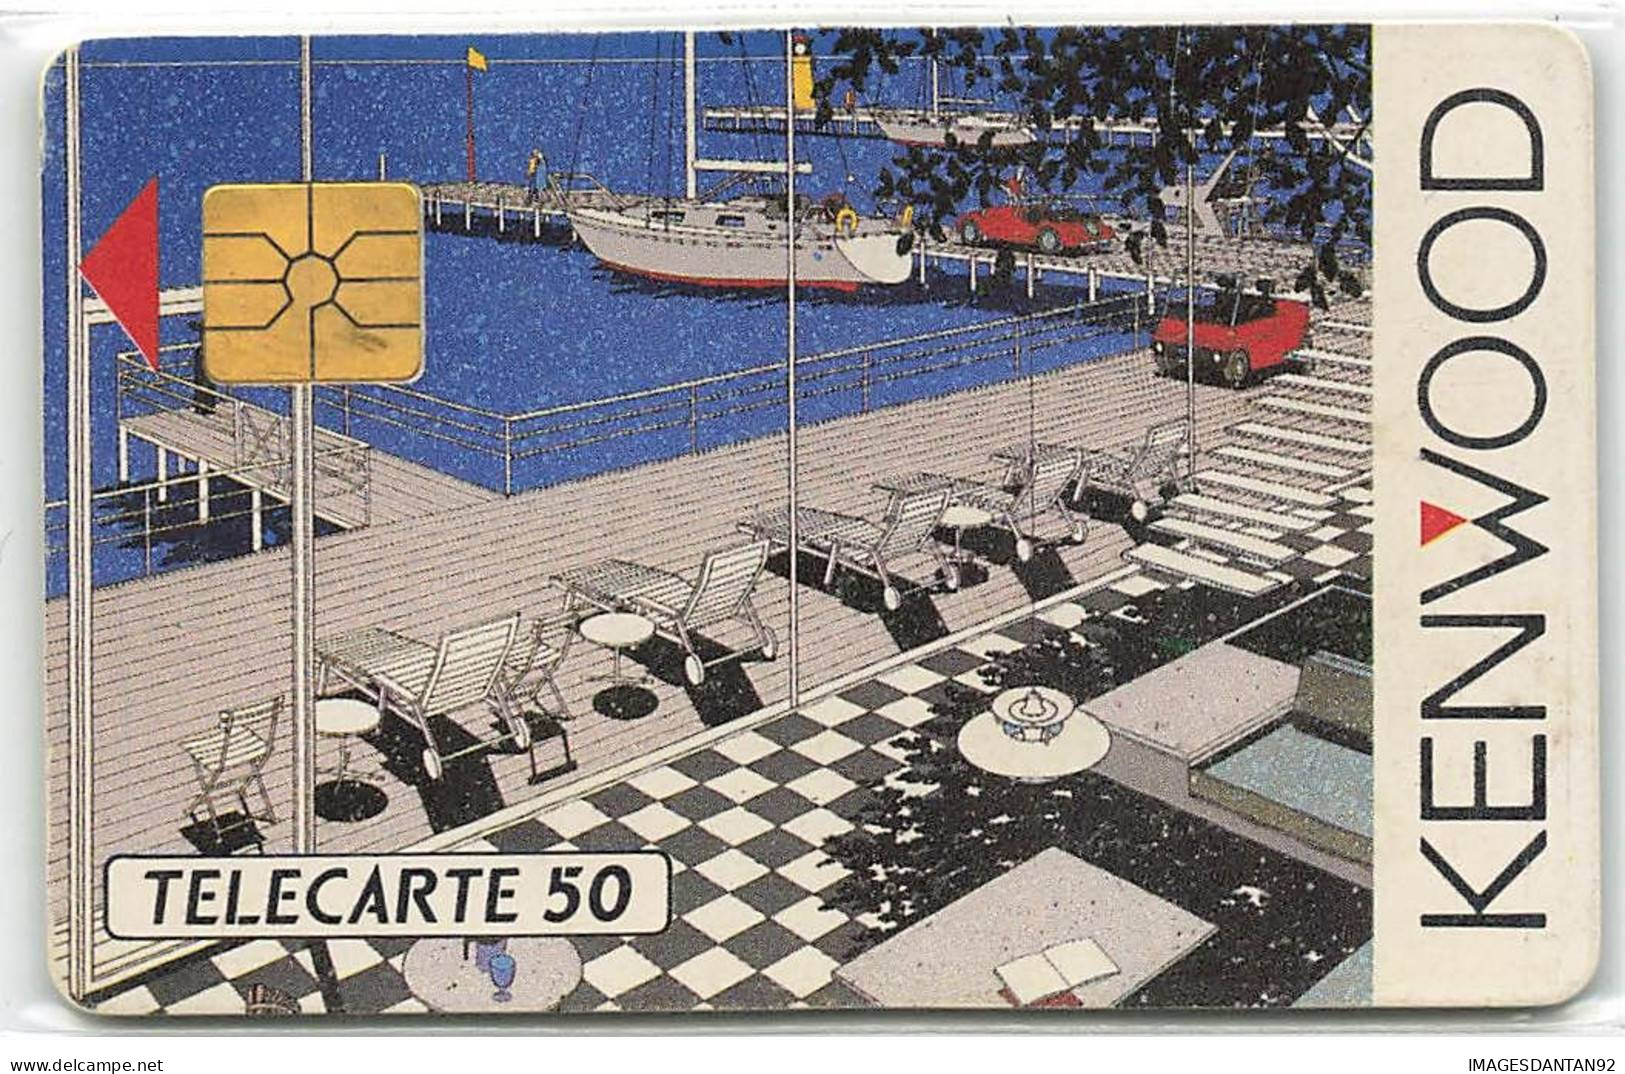 KENWOOD - 50U 5000 Ex ANNEE 1989 - Telefoonkaarten Voor Particulieren